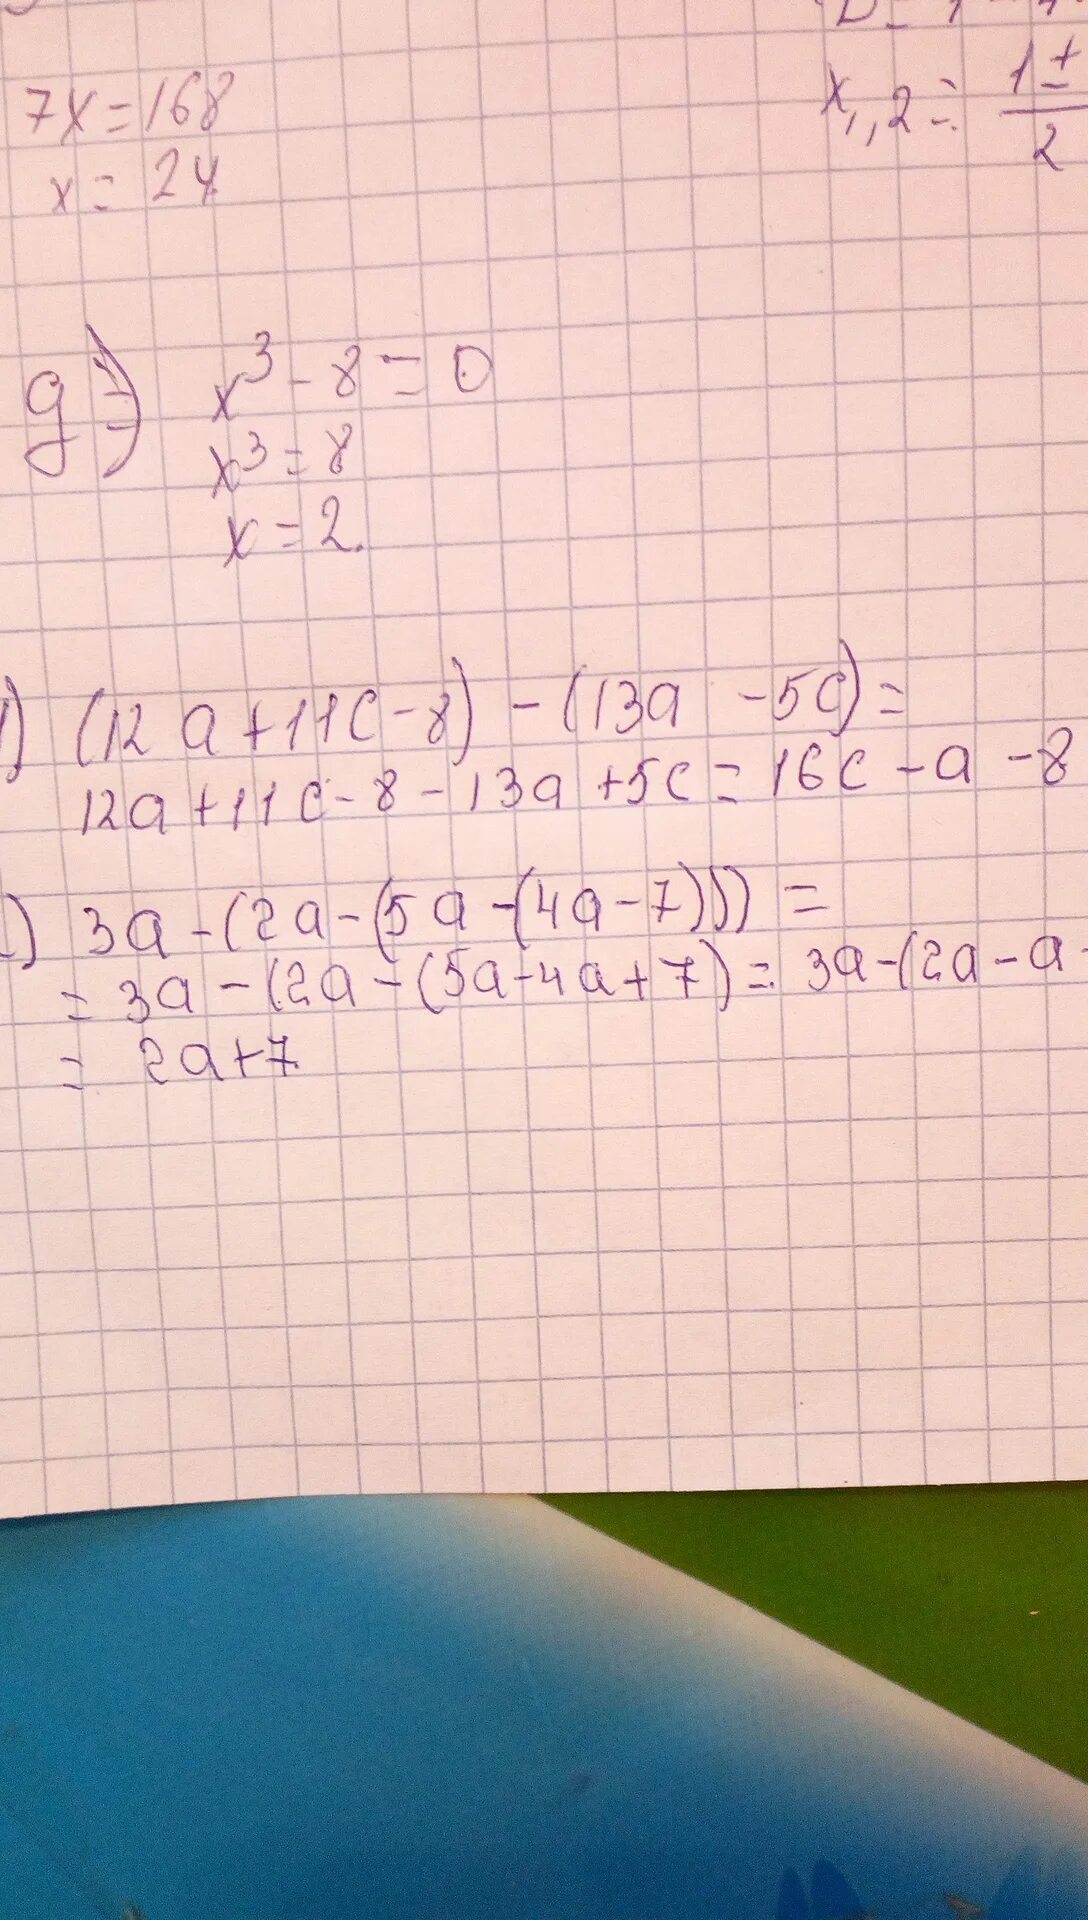 6 x 1 12 решение. 2a-1/2b+0.5c. 5a-3+5a2/a+1 решение. 11-4+3. Решение. 5x+10/x-1 *x^2-1/x-4 25b^2c/3a^6:16bc/a^5.